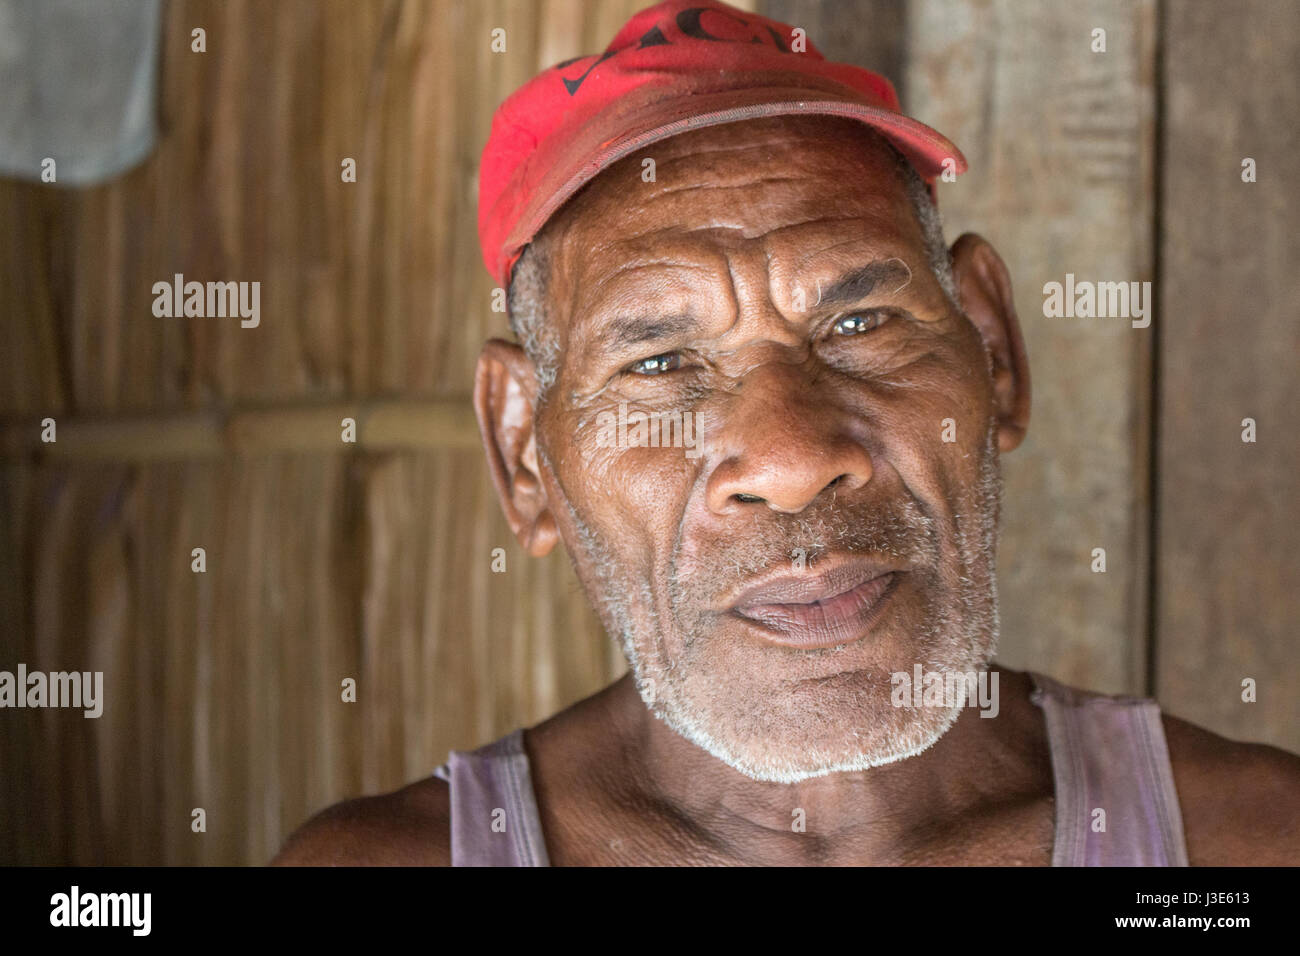 Owaraha, Isole Salomone - 6 Marzo 2017: Ritratto di un anziano uomo melanesiano presso la spiaggia di Owaraha (Santa Ana) Foto Stock